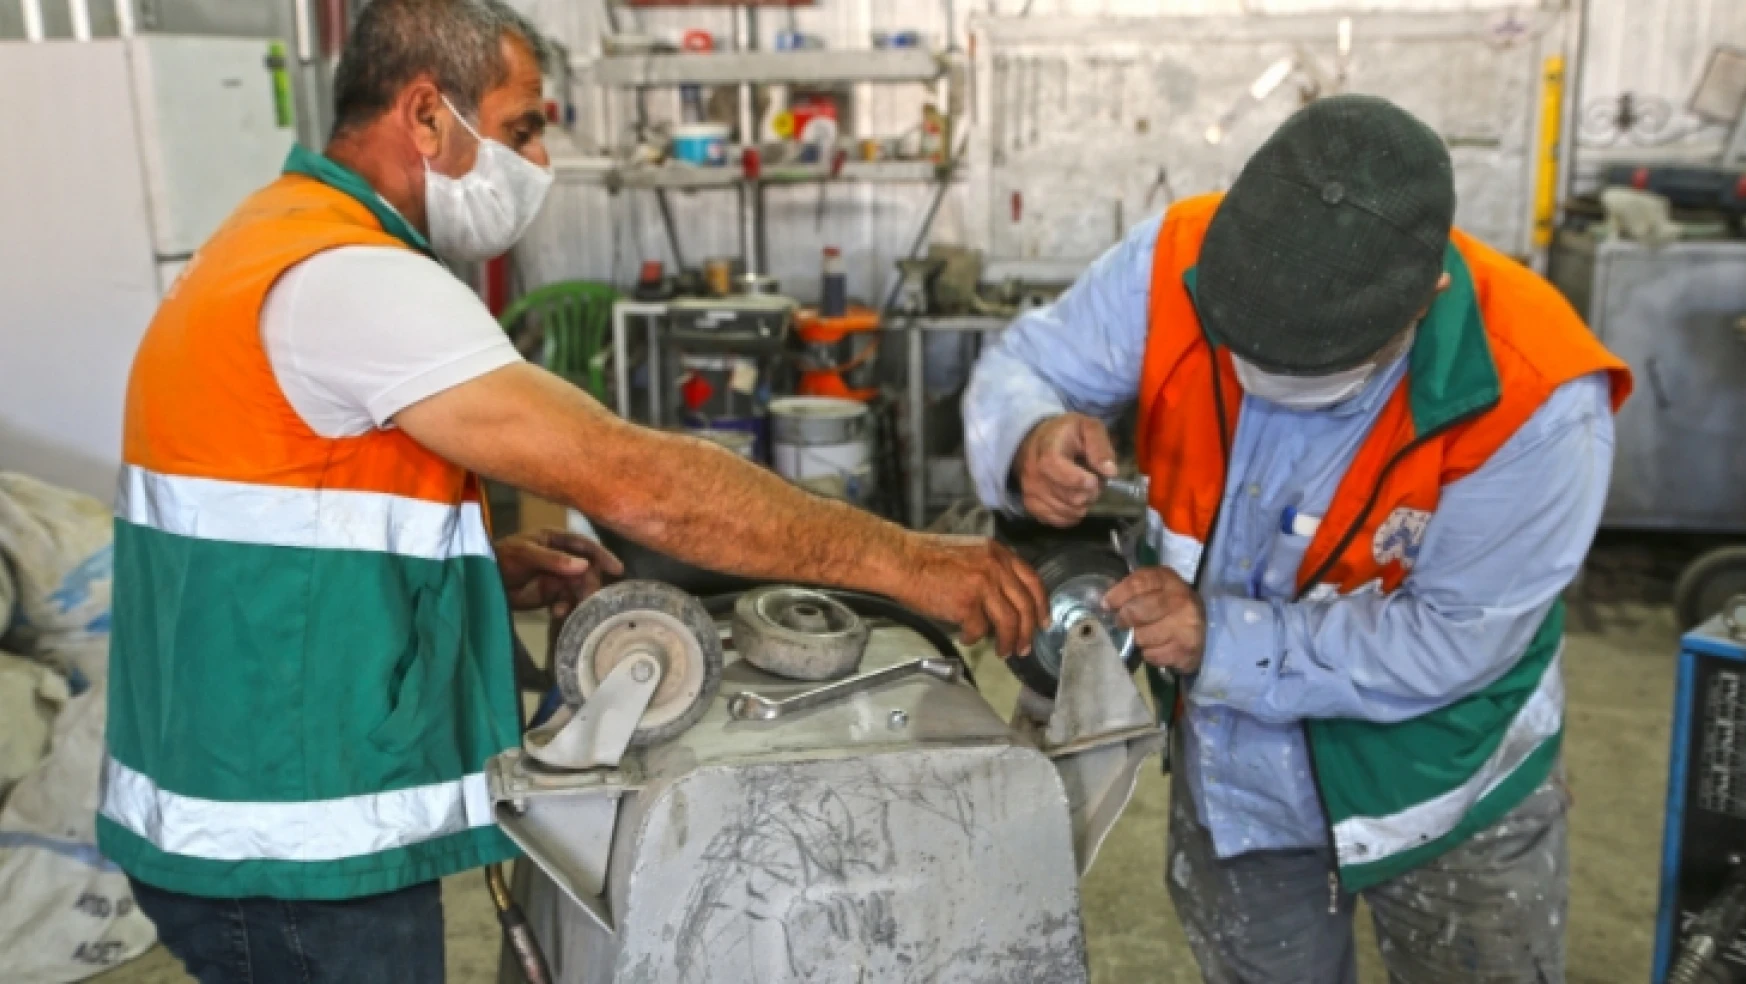 Elazığ Belediyesi, Temizlik İşleri Müdürlüğü Bakım ve Onarım Çalışmalarını Kendi Atölyesinde Yapıyor